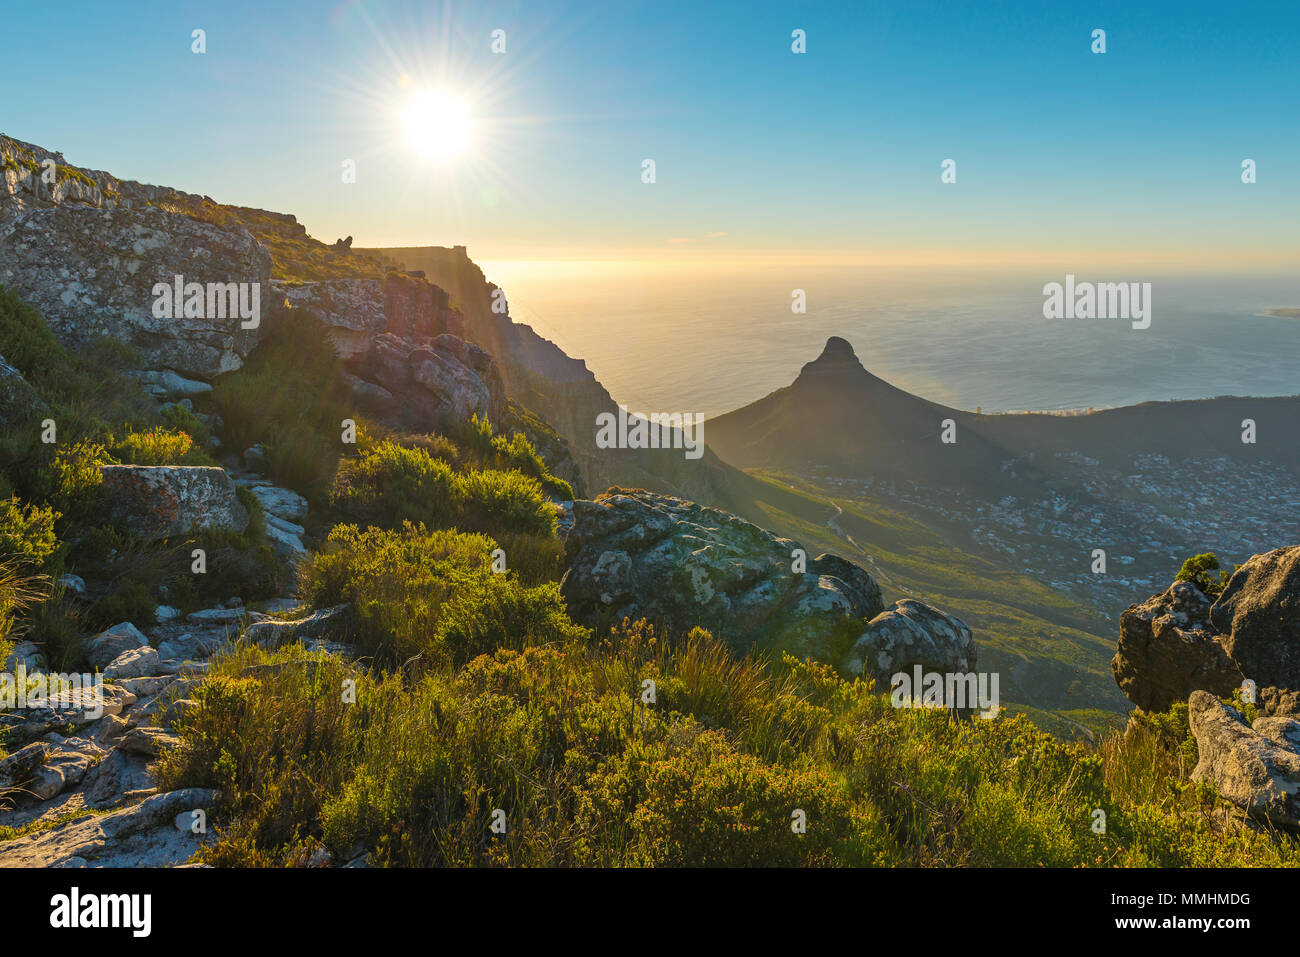 Coucher de soleil paysage avec sunbeam de Cape Town City et Lions Head mountain peak au coucher du soleil vu depuis le parc national de Table Mountain, Afrique du Sud. Banque D'Images